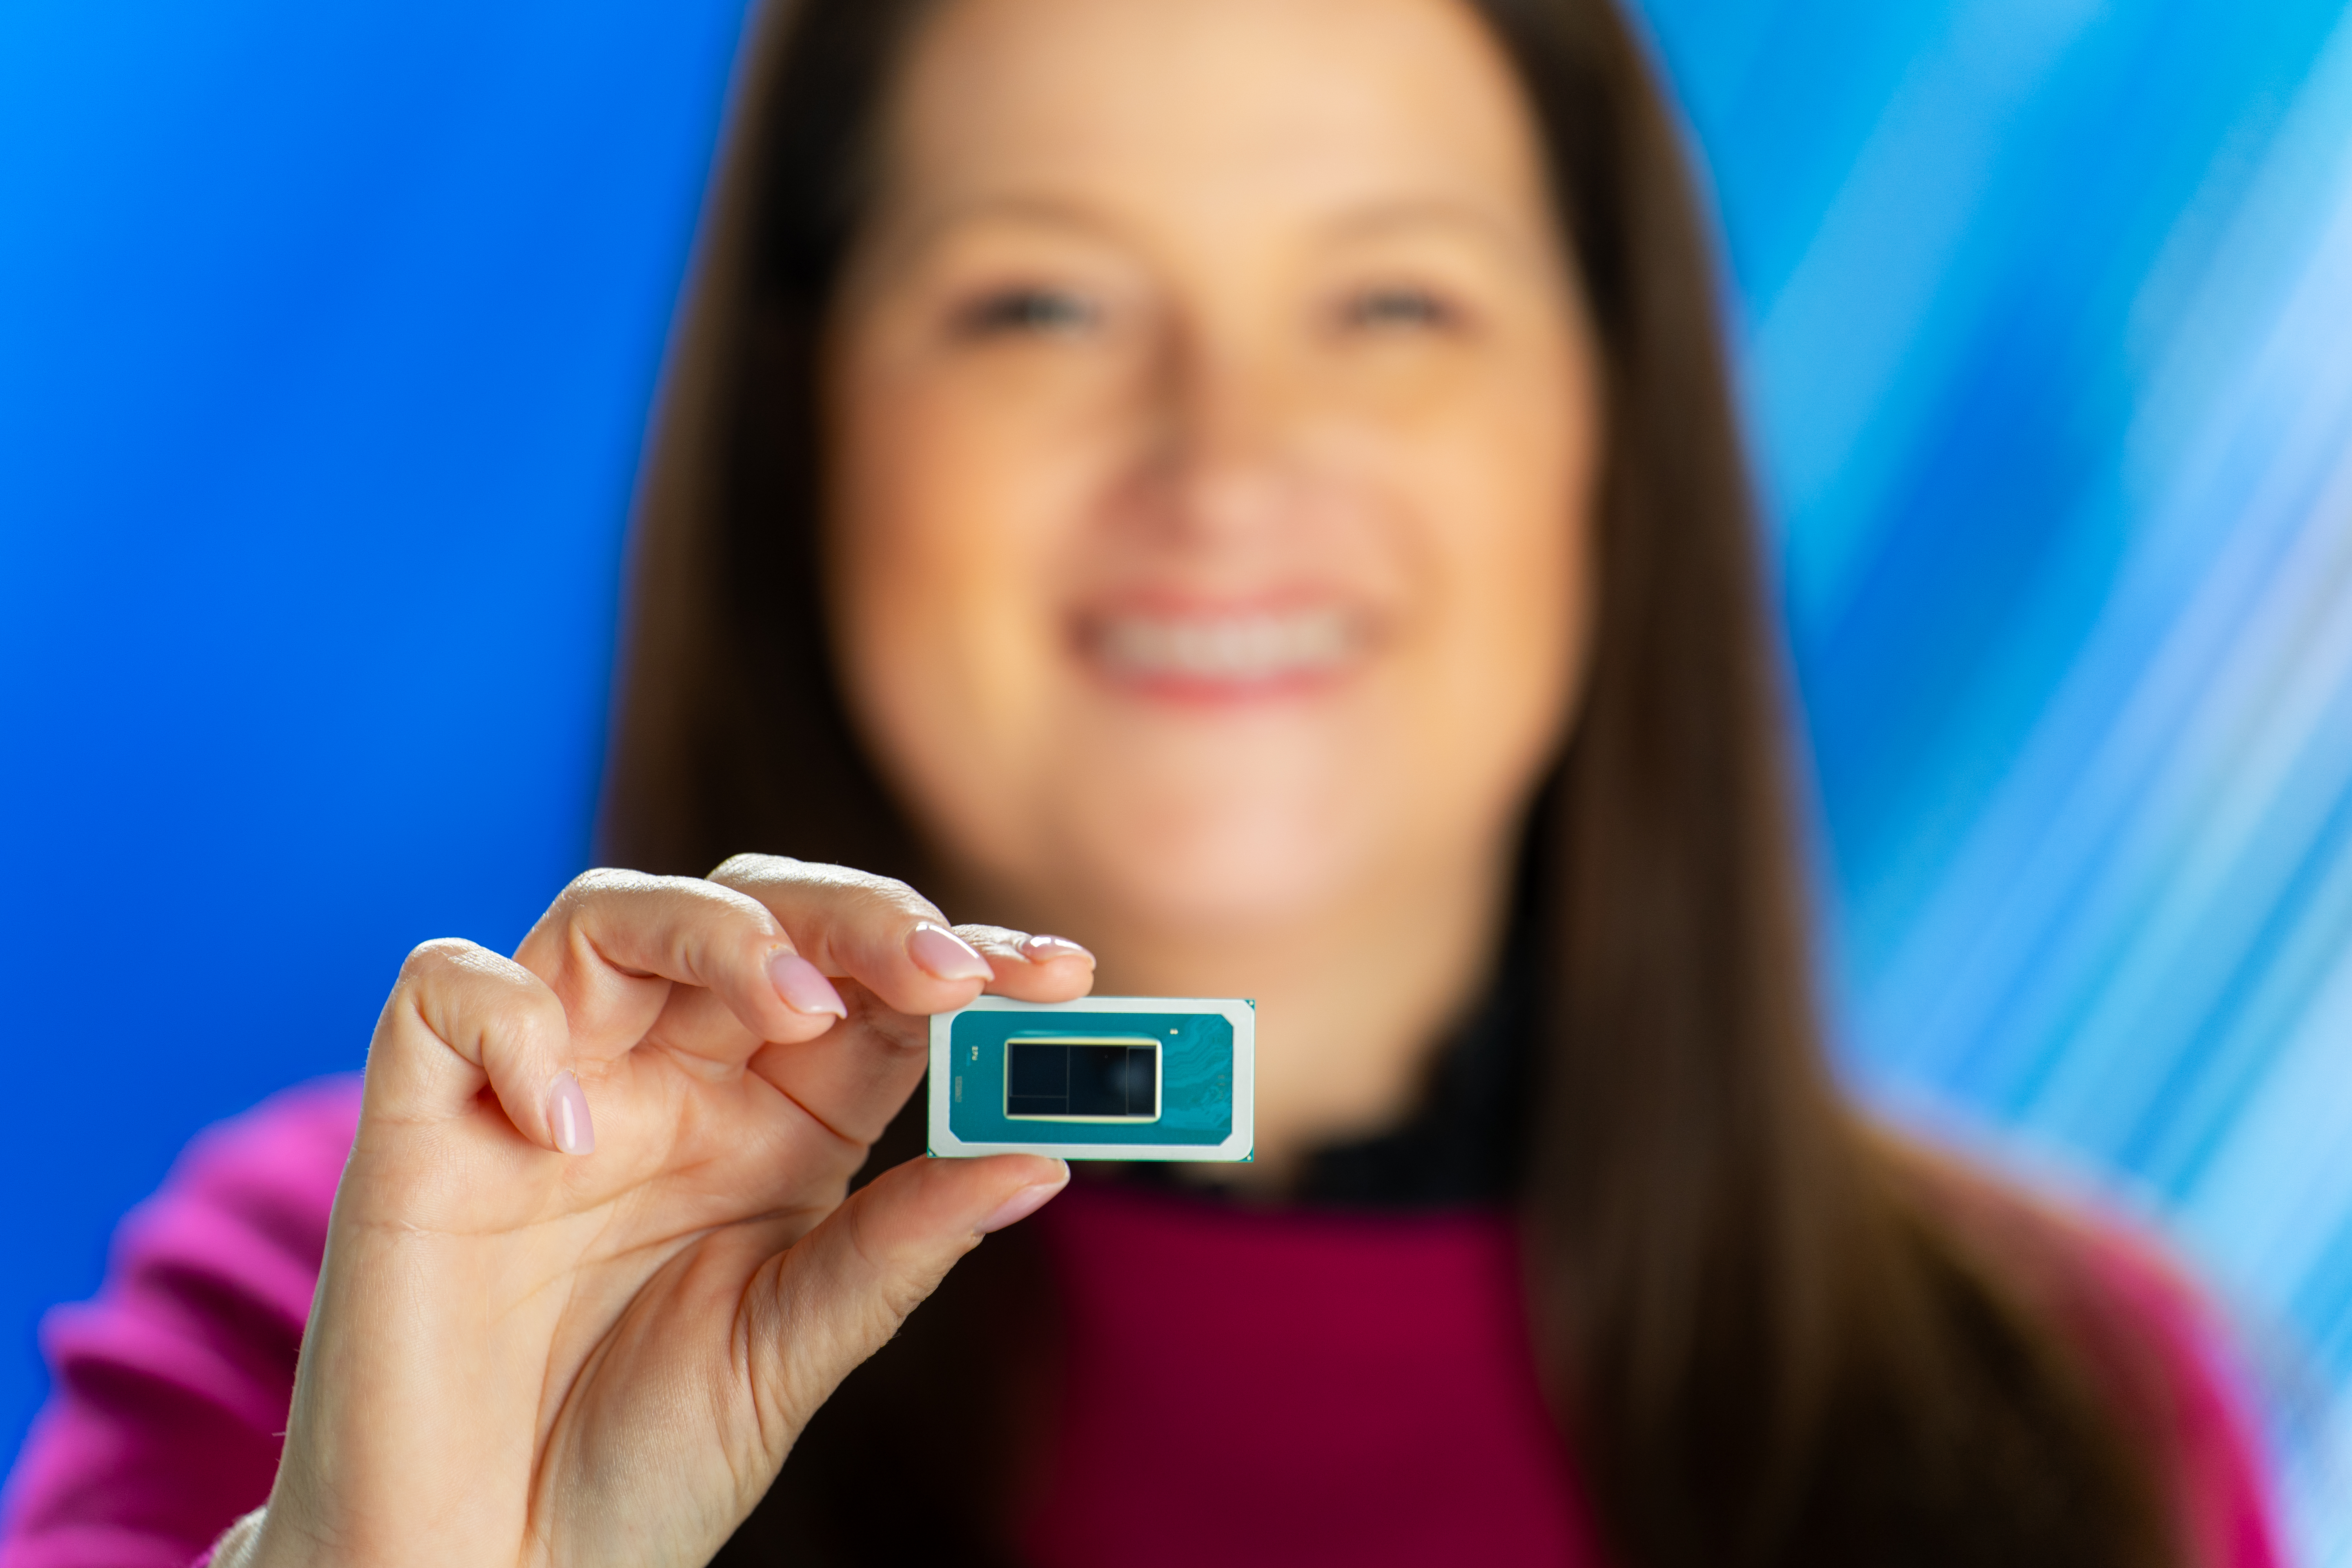 Intel Core Ultra chip shot